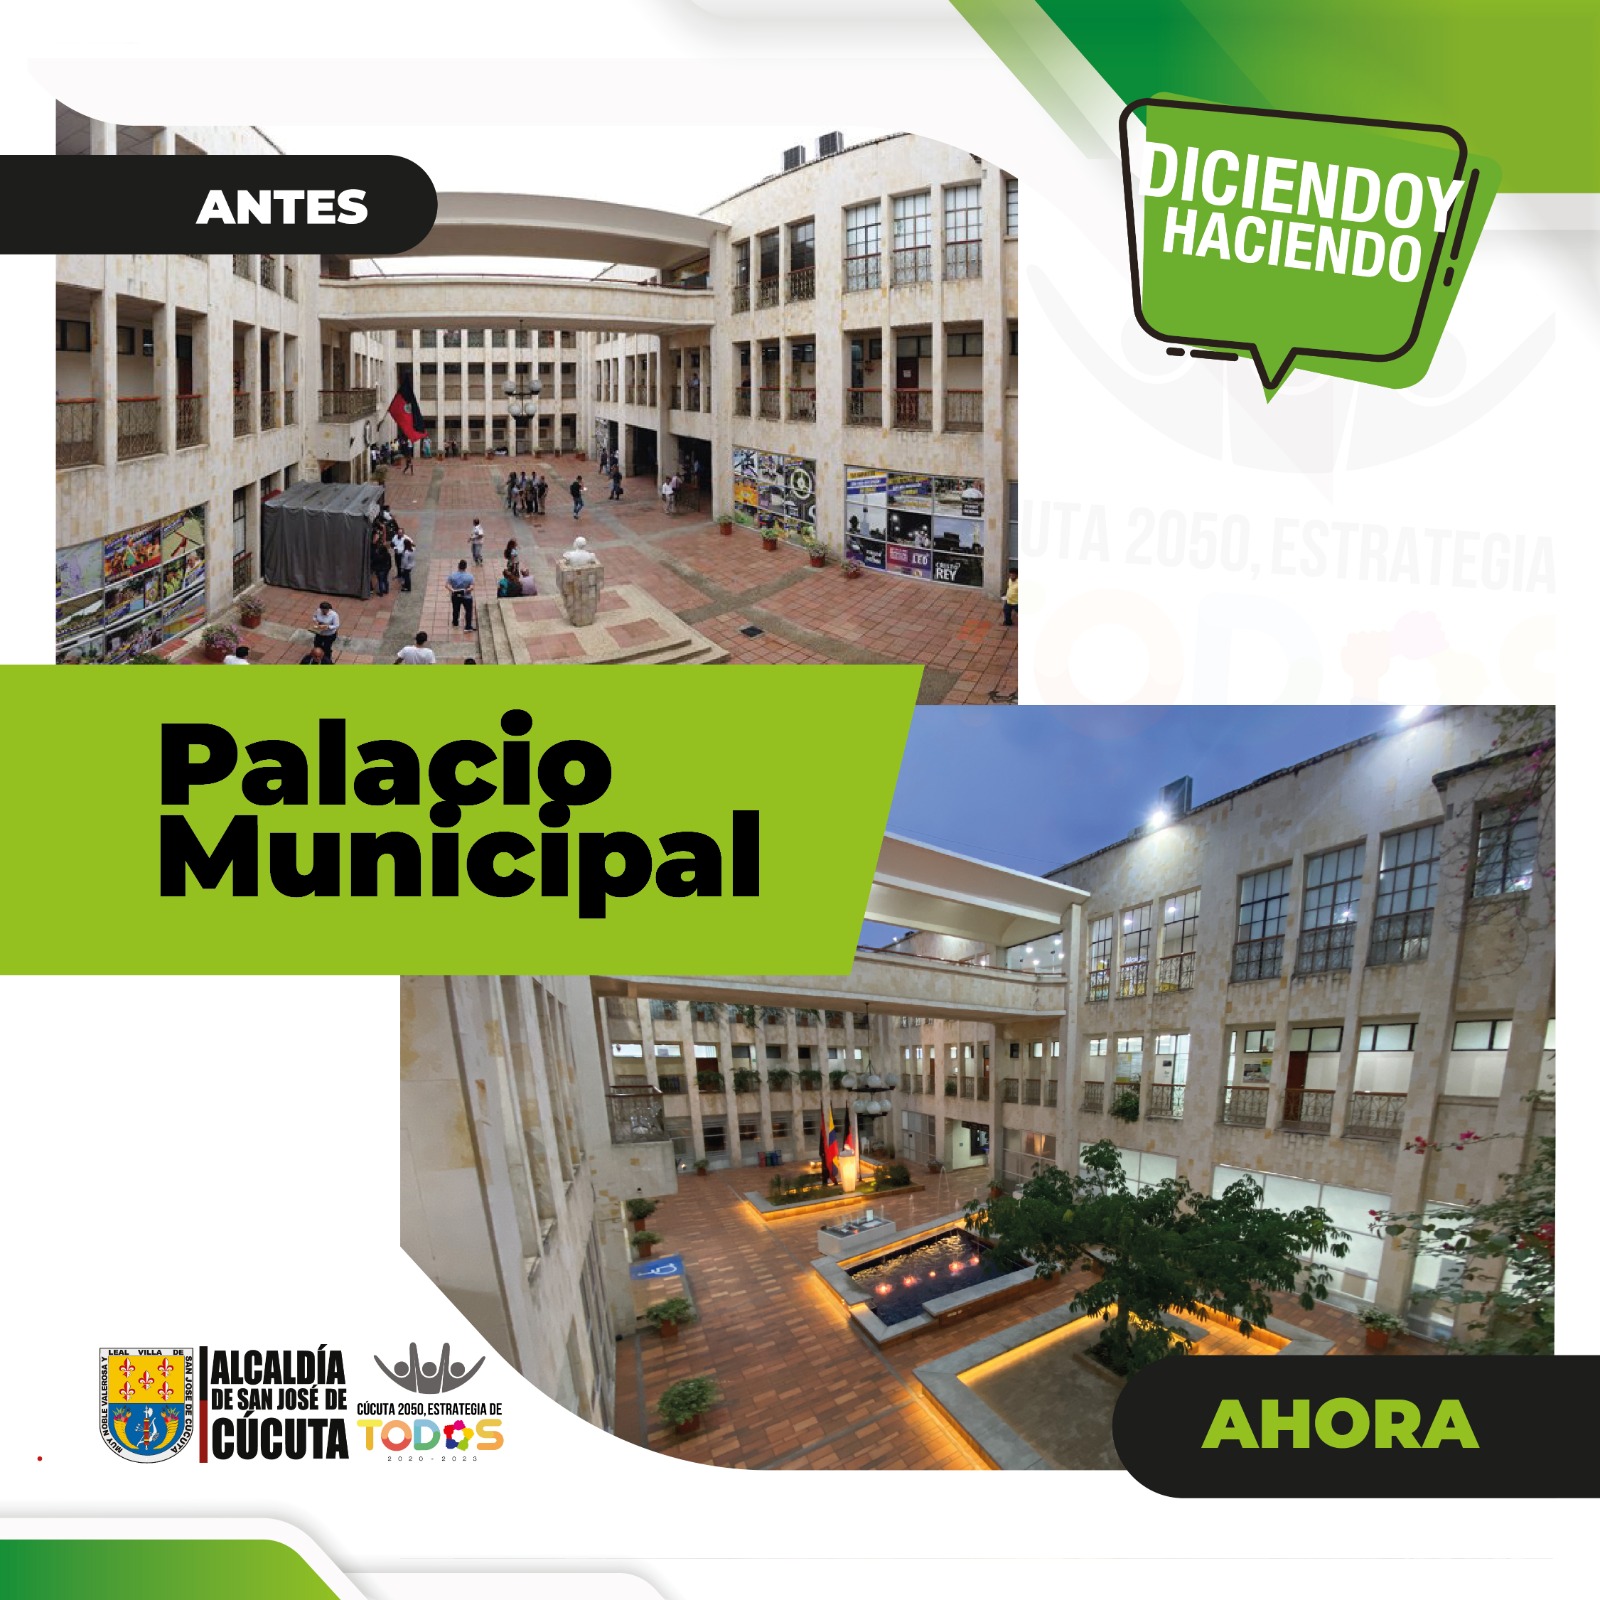 img1-palacio